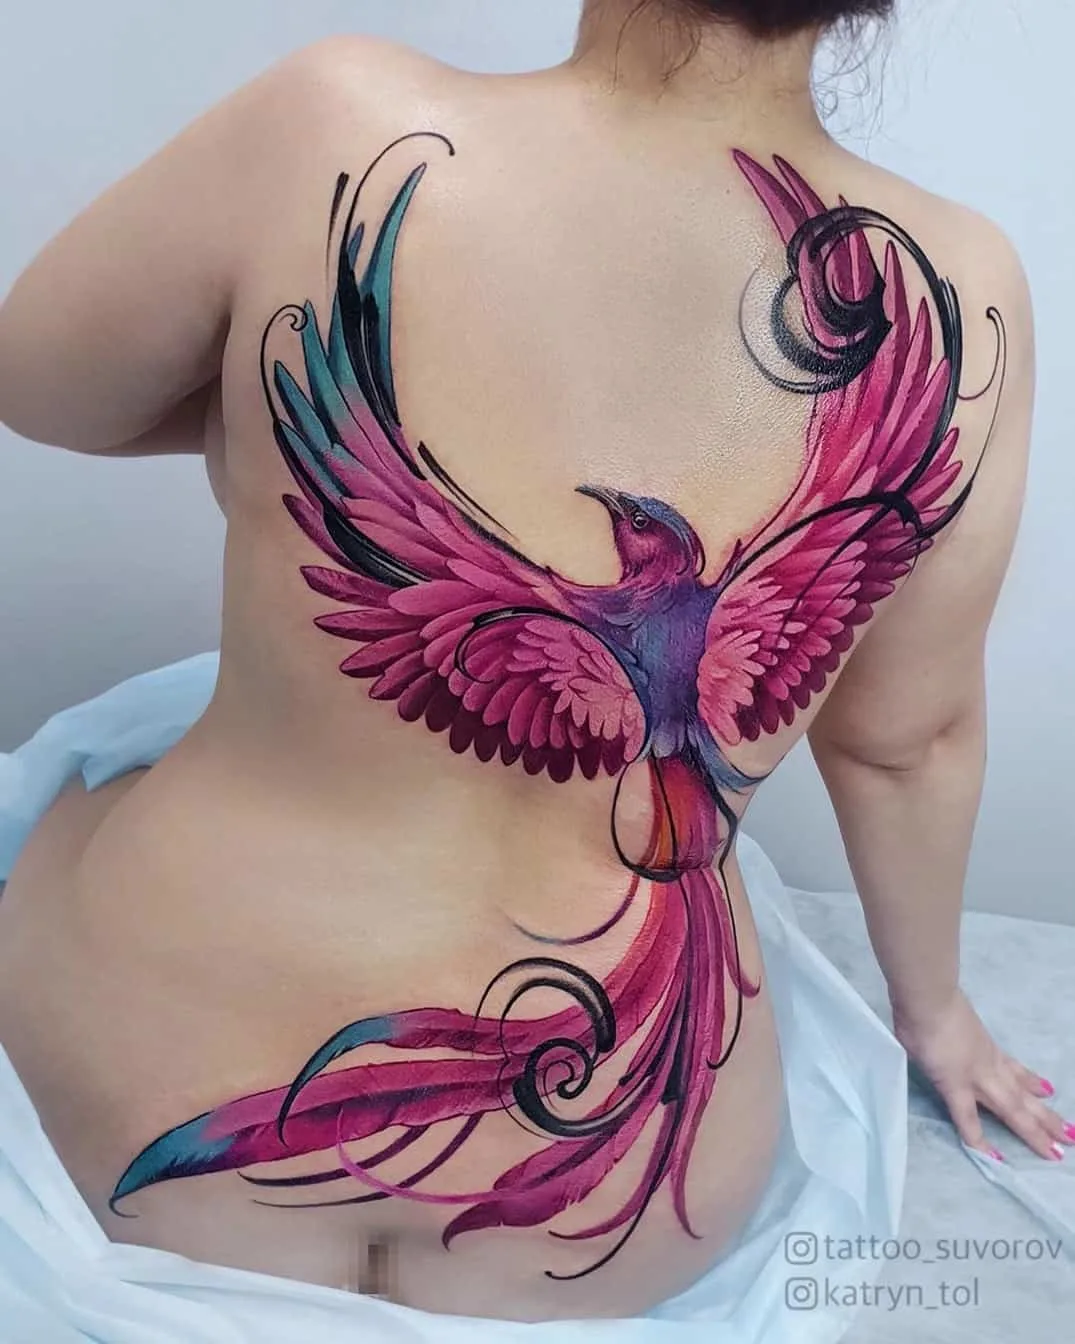 Powerful phoenix tattoo